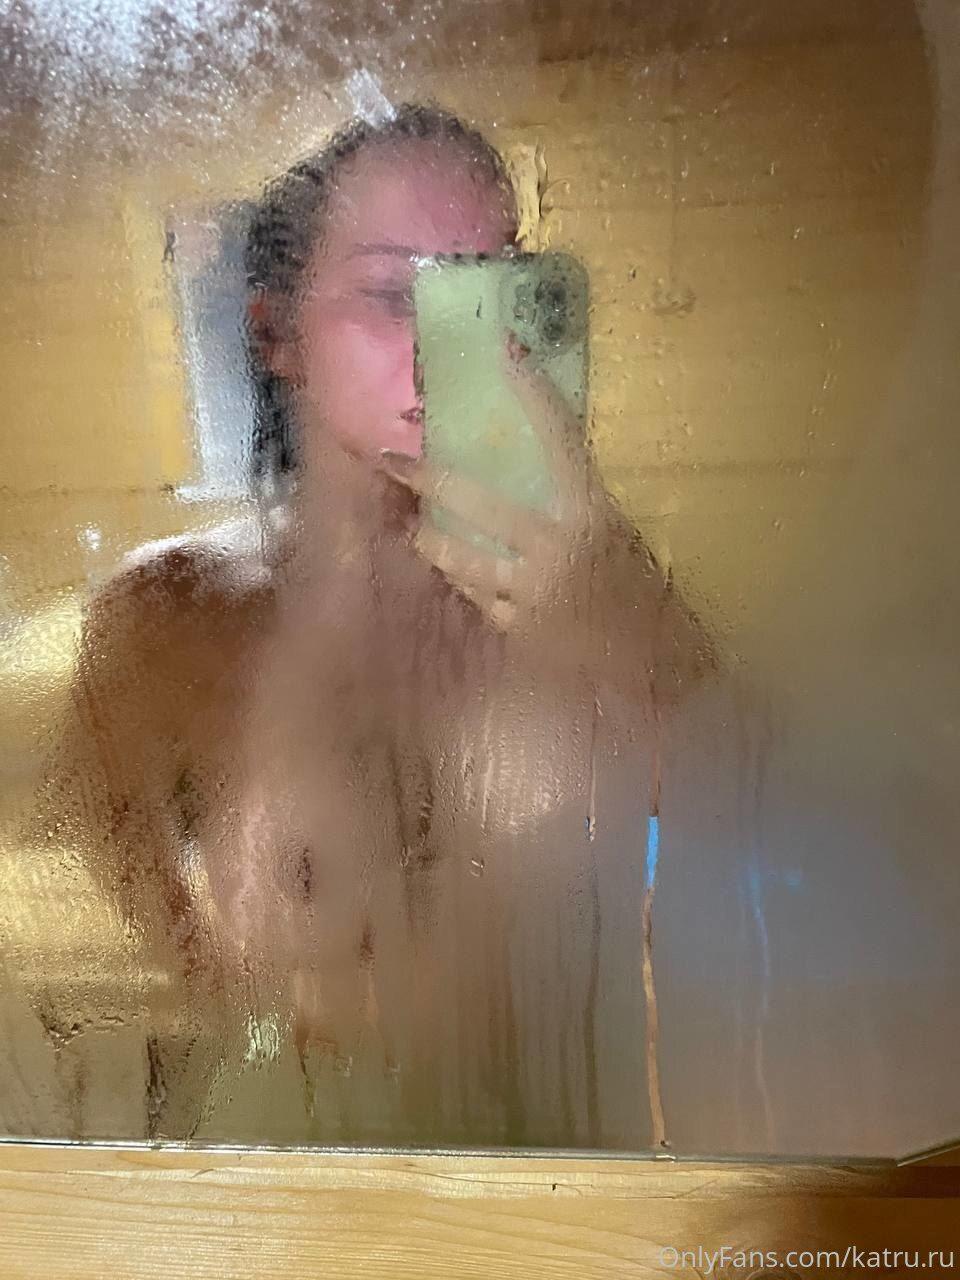 Katru.ru / Monroe Nude OnlyFans Leaks 1